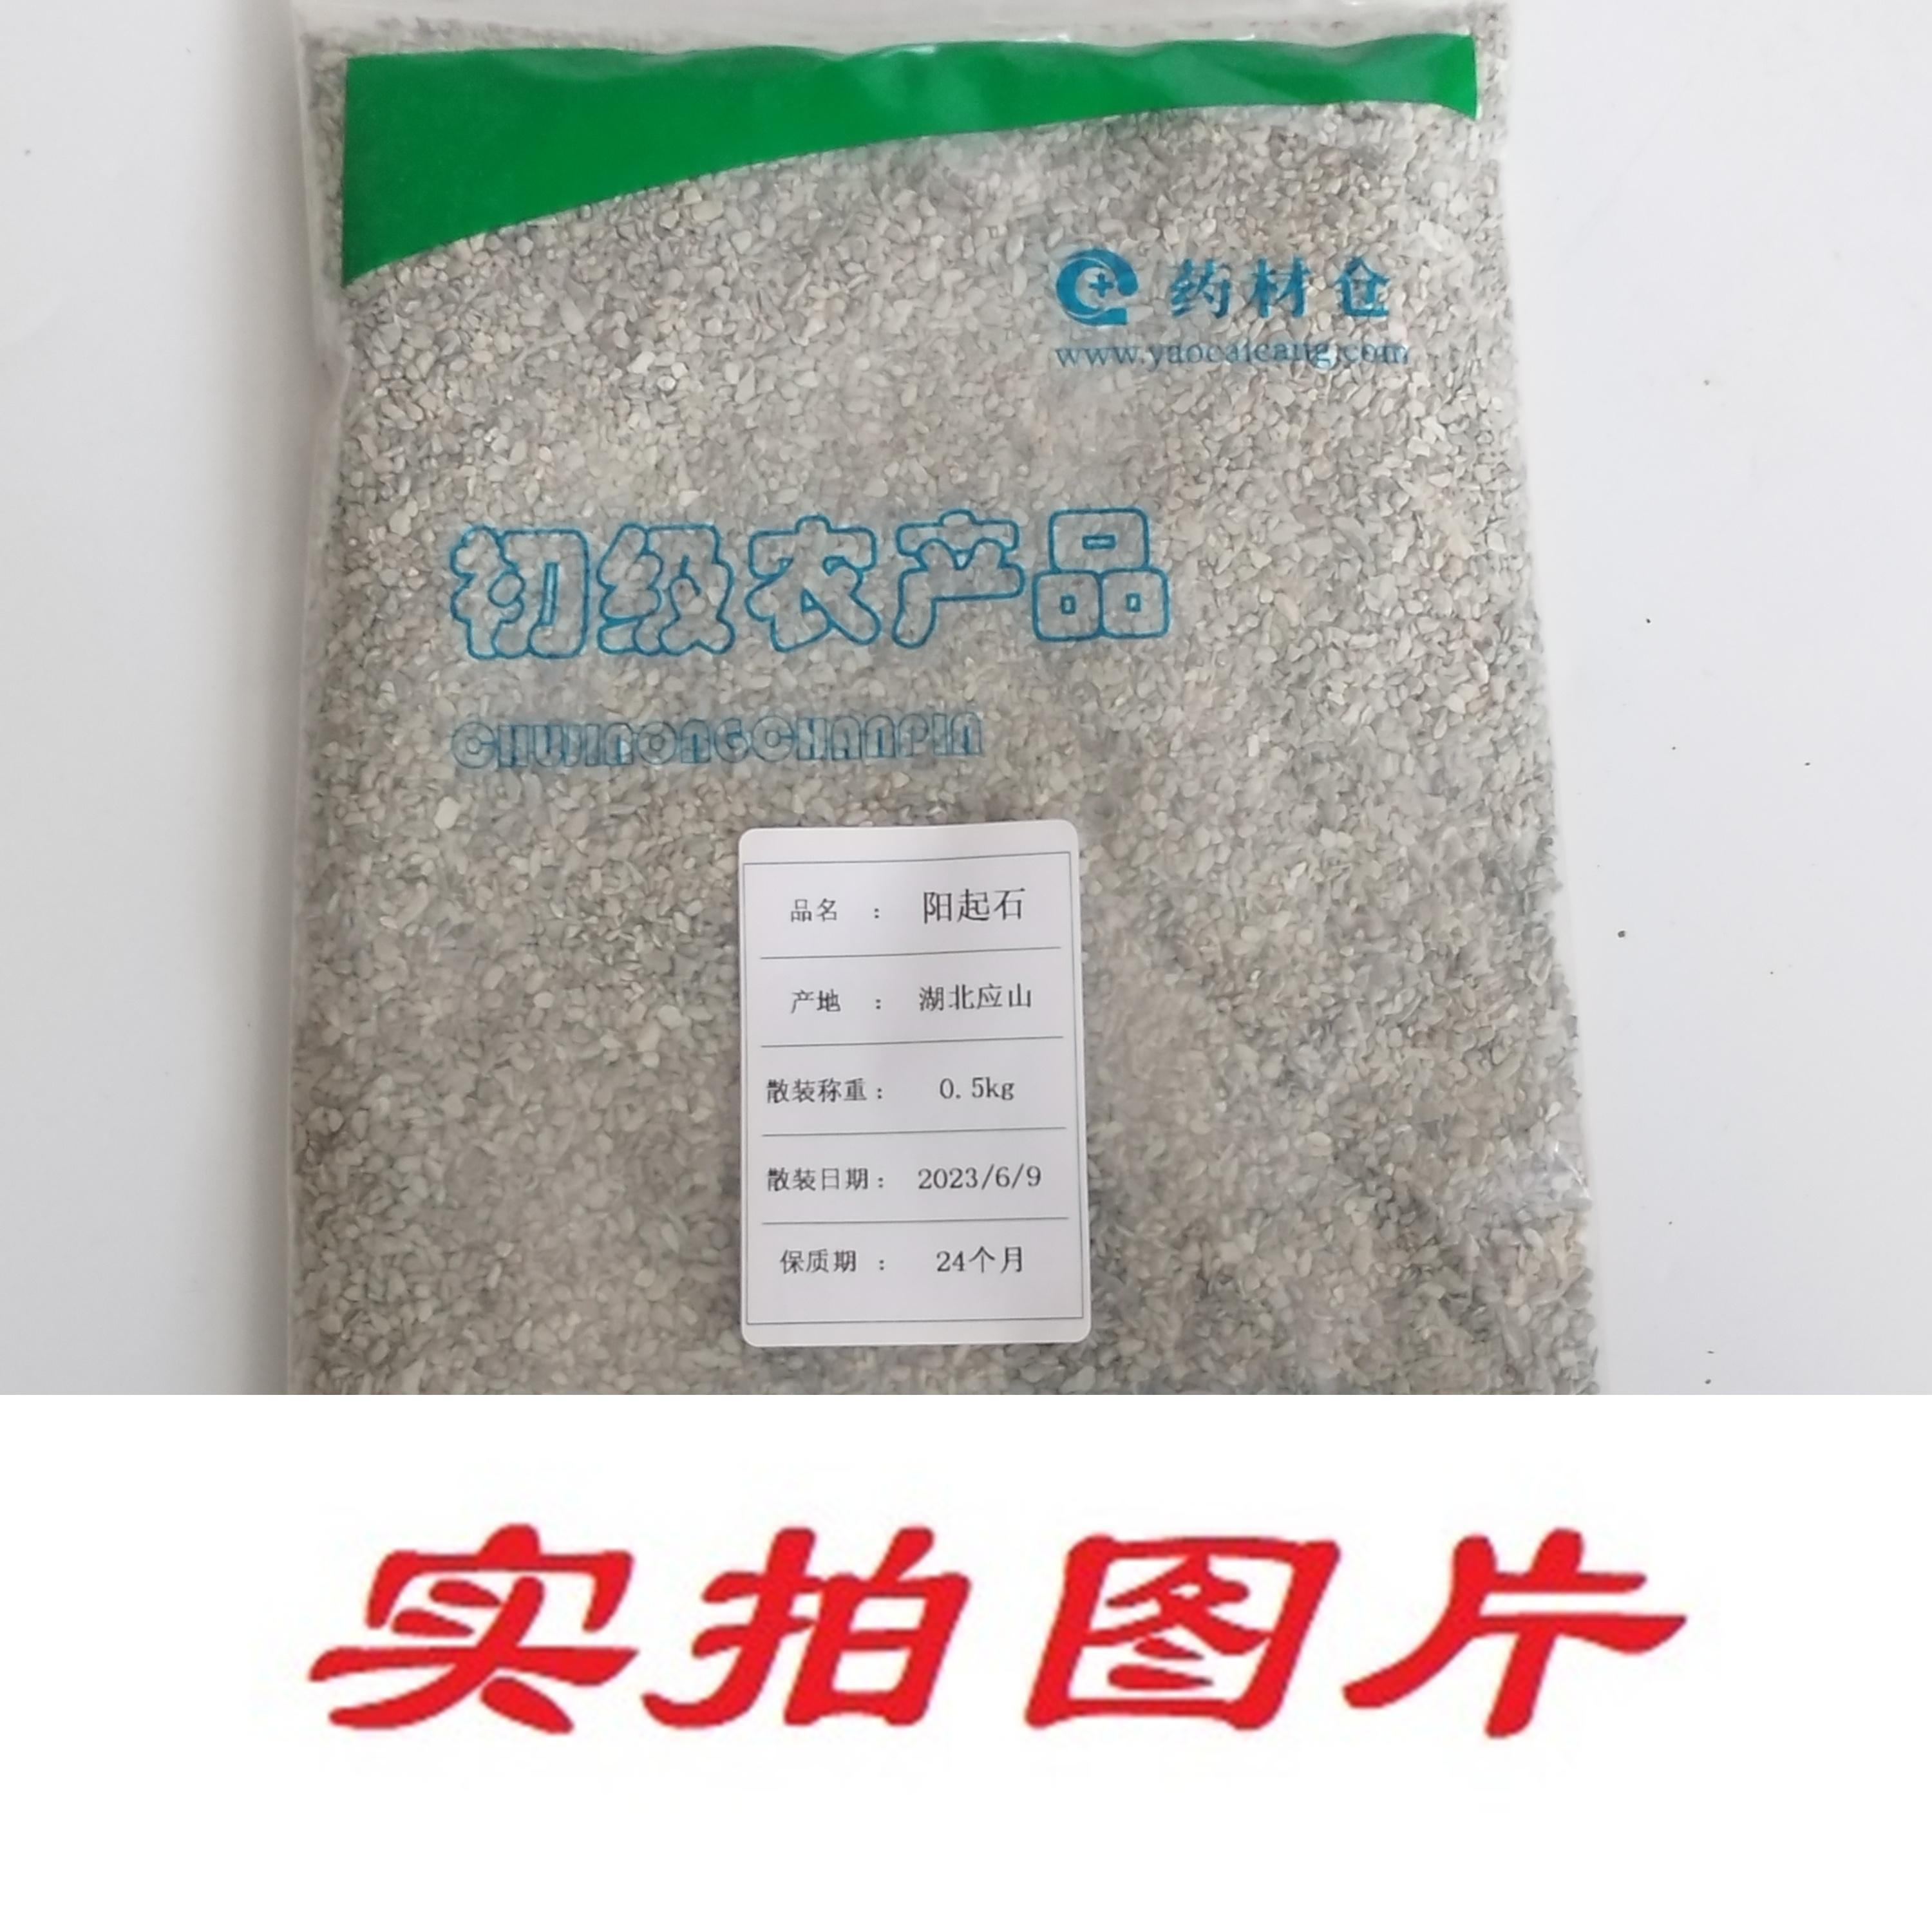 【】阳起石0.5kg-农副产品